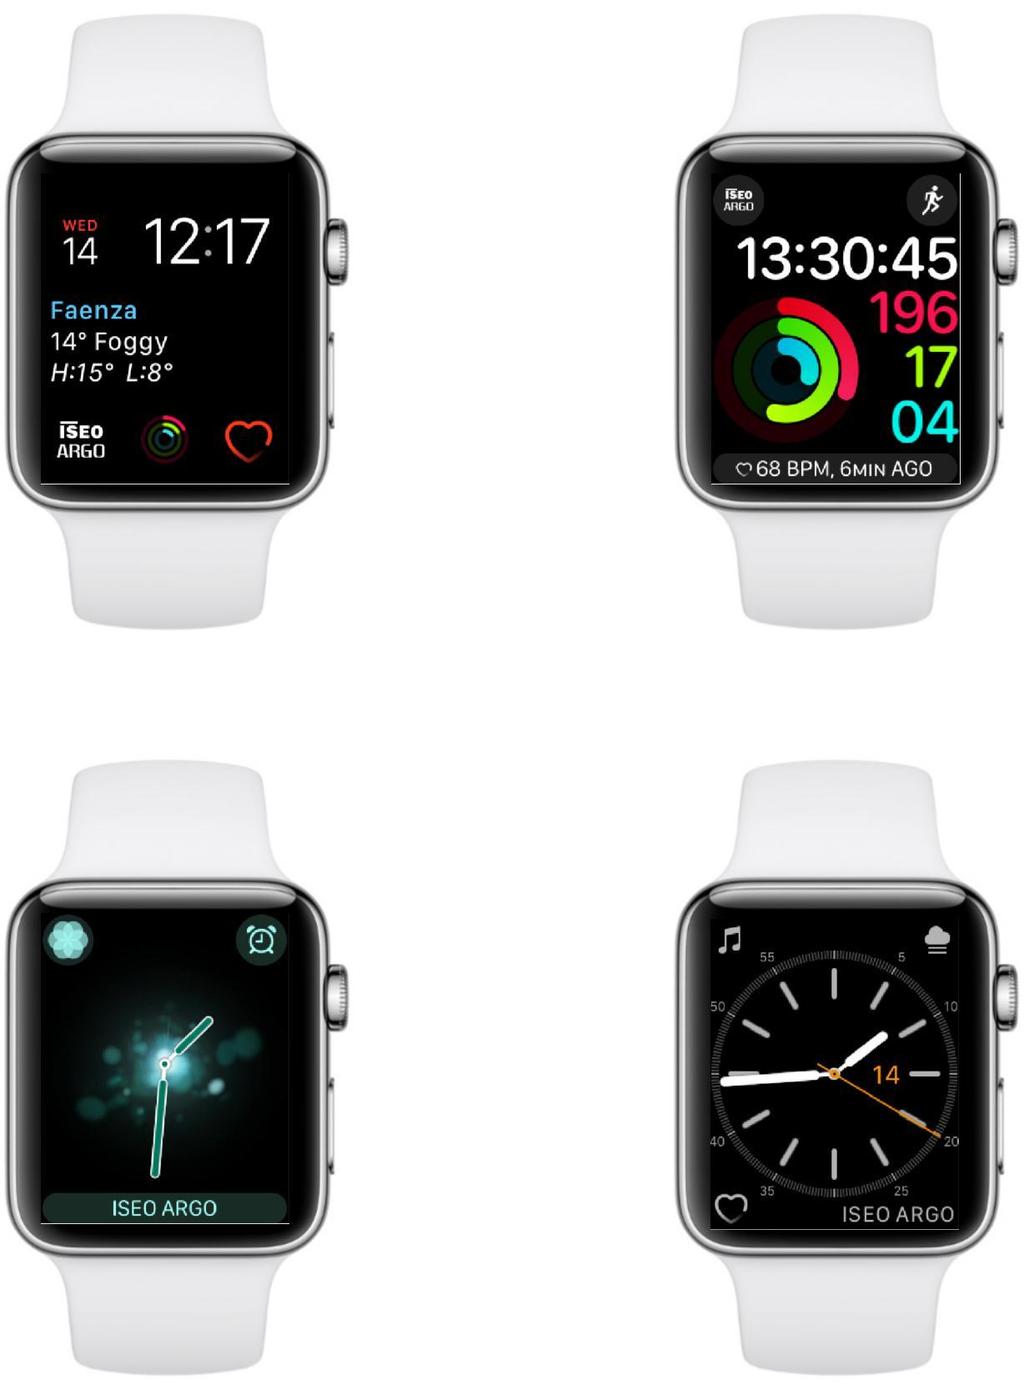 Argo per Apple Watch Puoi aggiungere complicazioni ISEO Argo in differenti quadranti e posizioni. A seconda del tipo di quadrante (circolare, modulare, utilità.